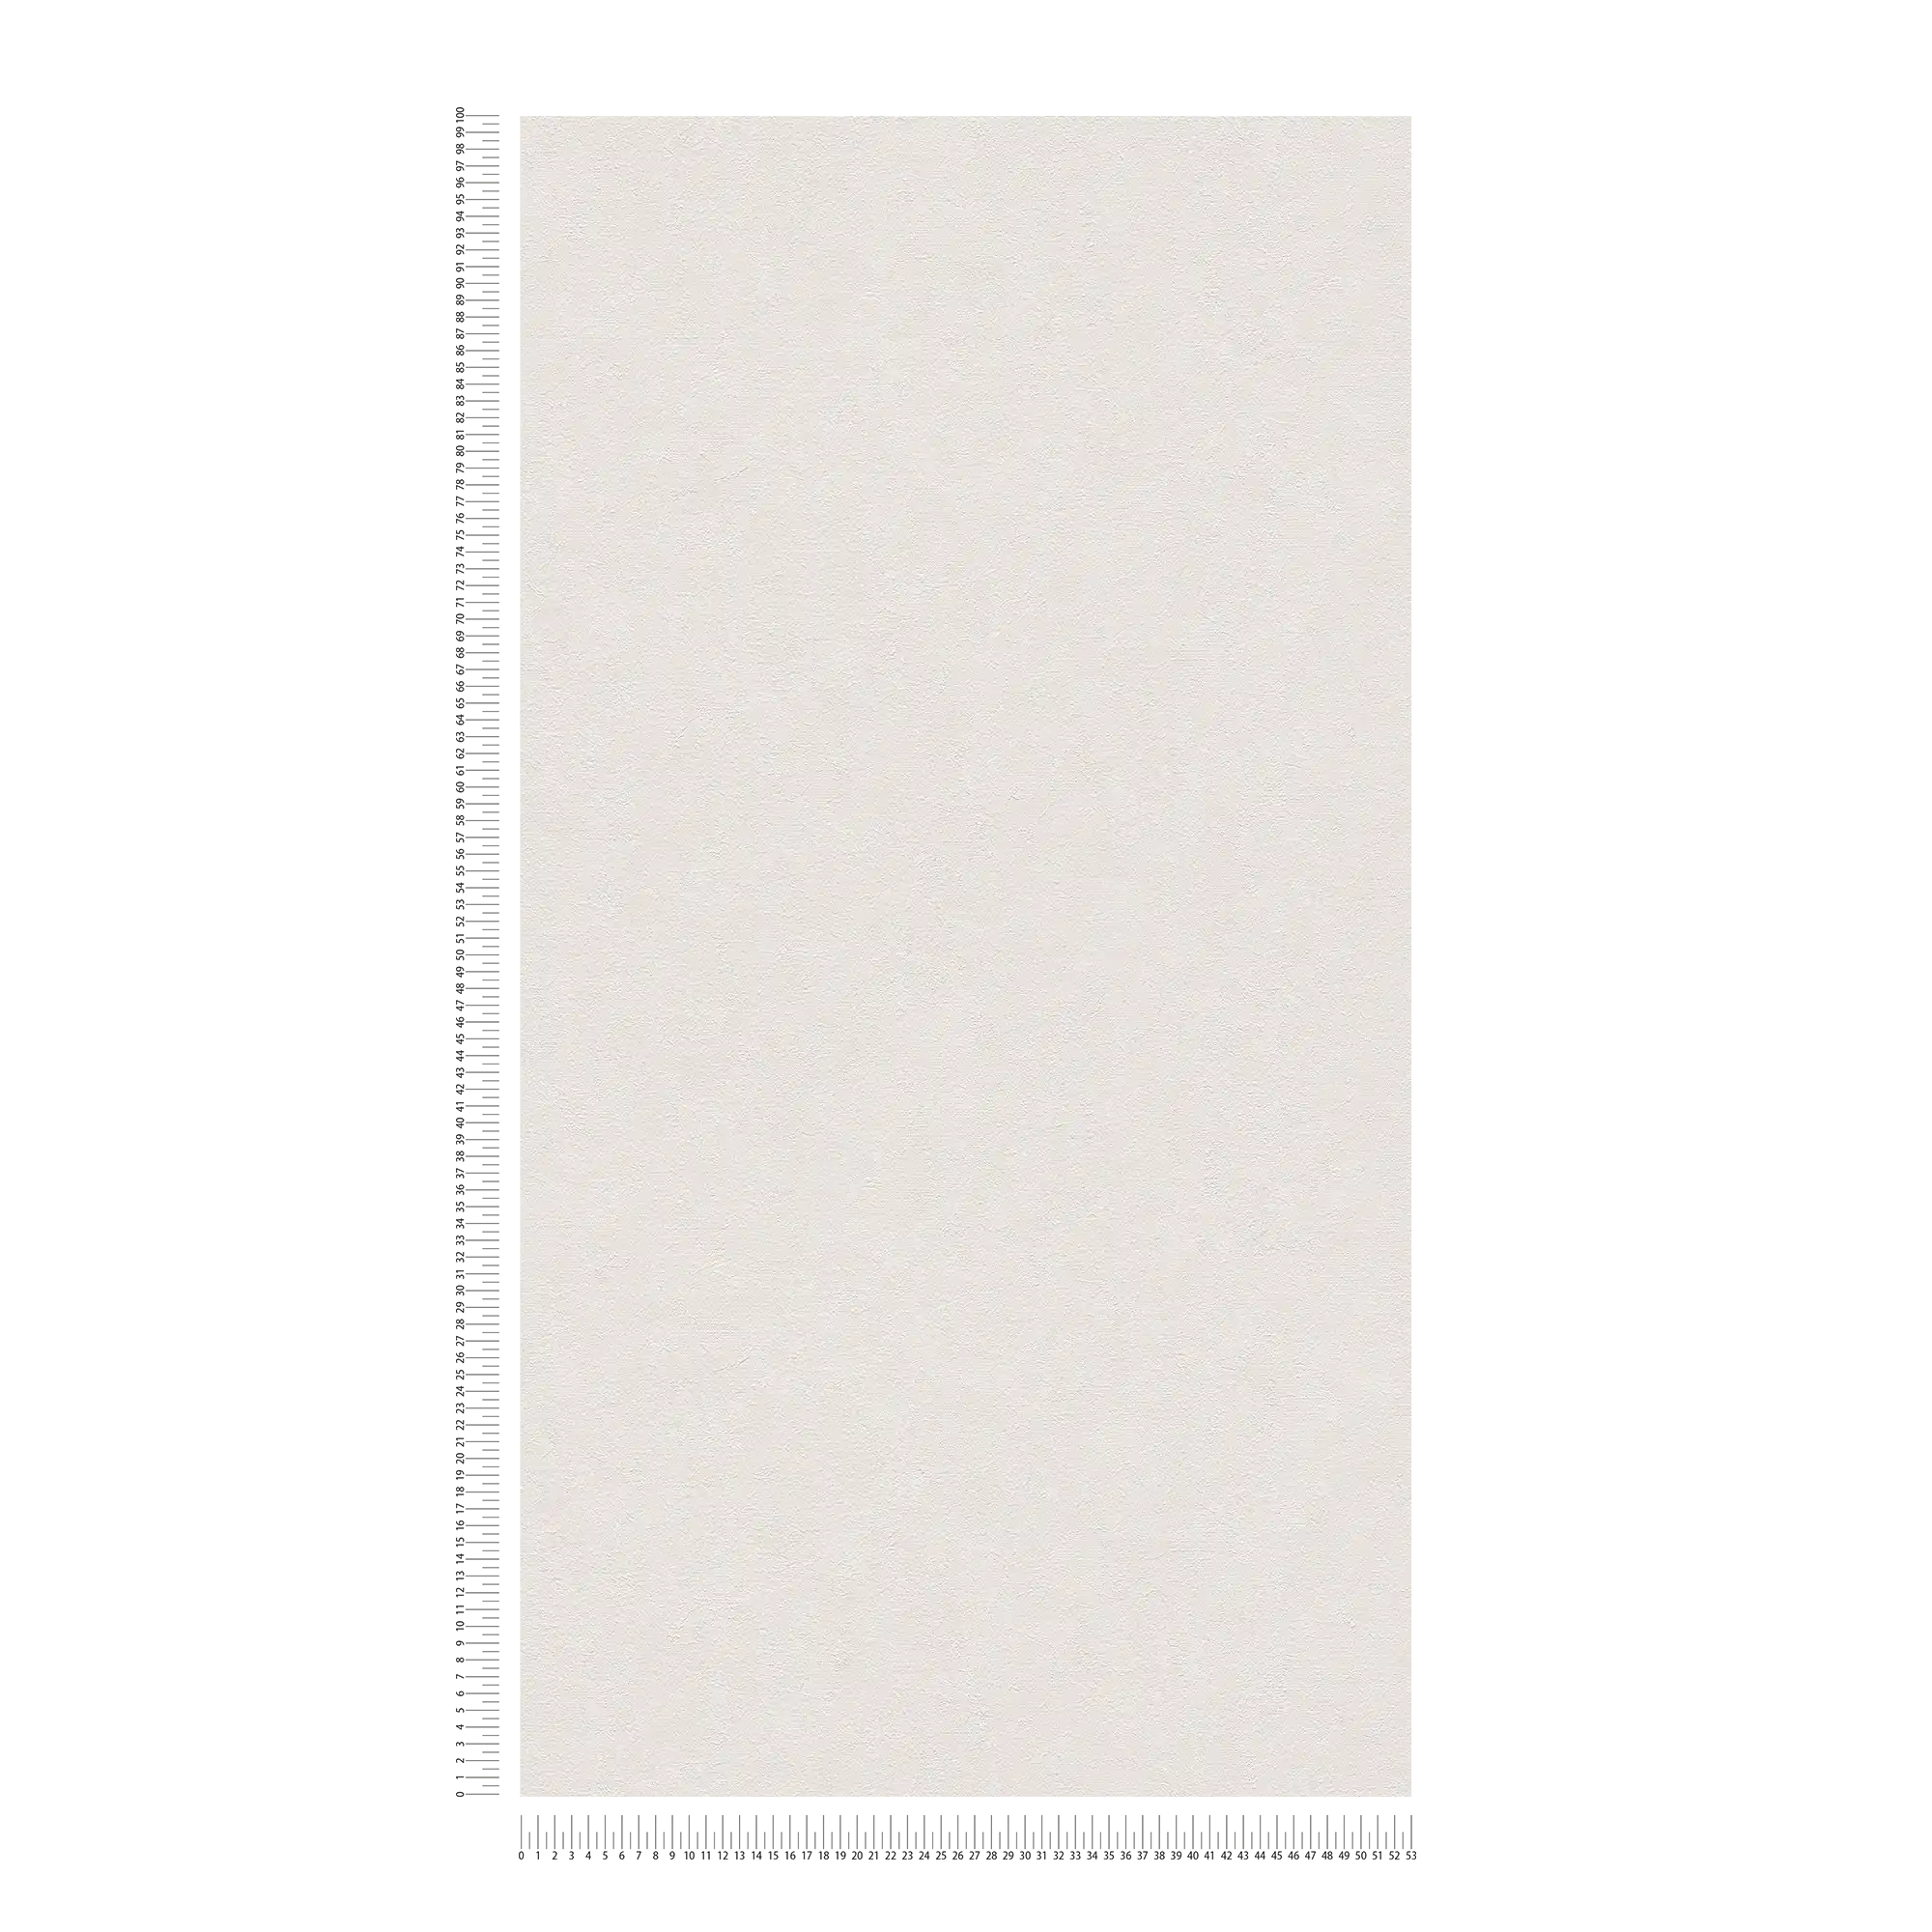             Papel pintado liso con aspecto de yeso y sombreado de color - crema, blanco
        